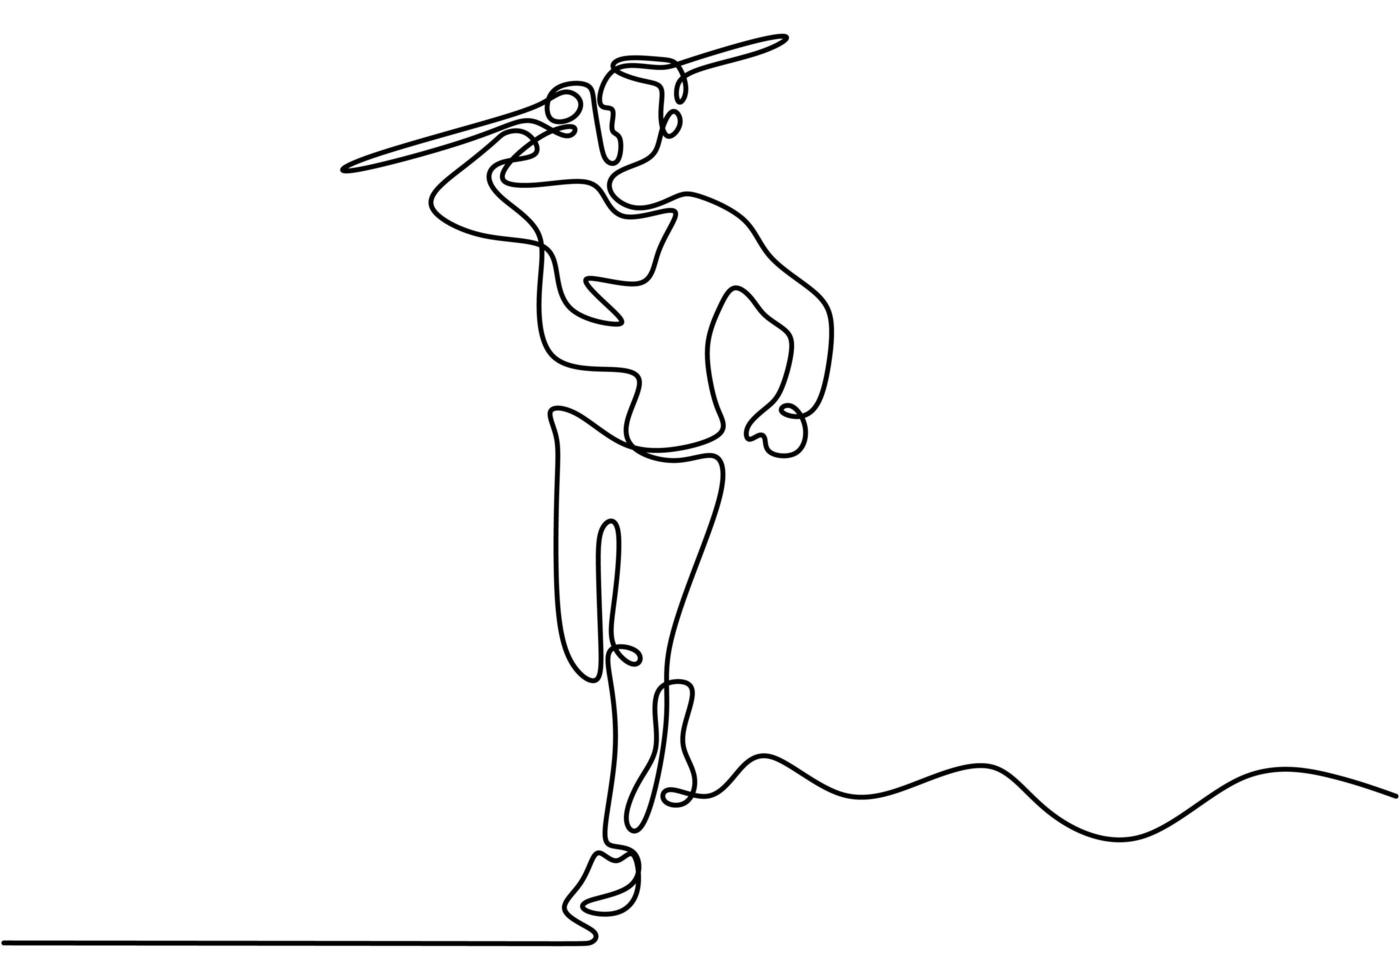 dibujo de línea continua del atleta de jabalina. joven deportista ejercicio para correr postura antes de lanzar jabalina en el campo. vector